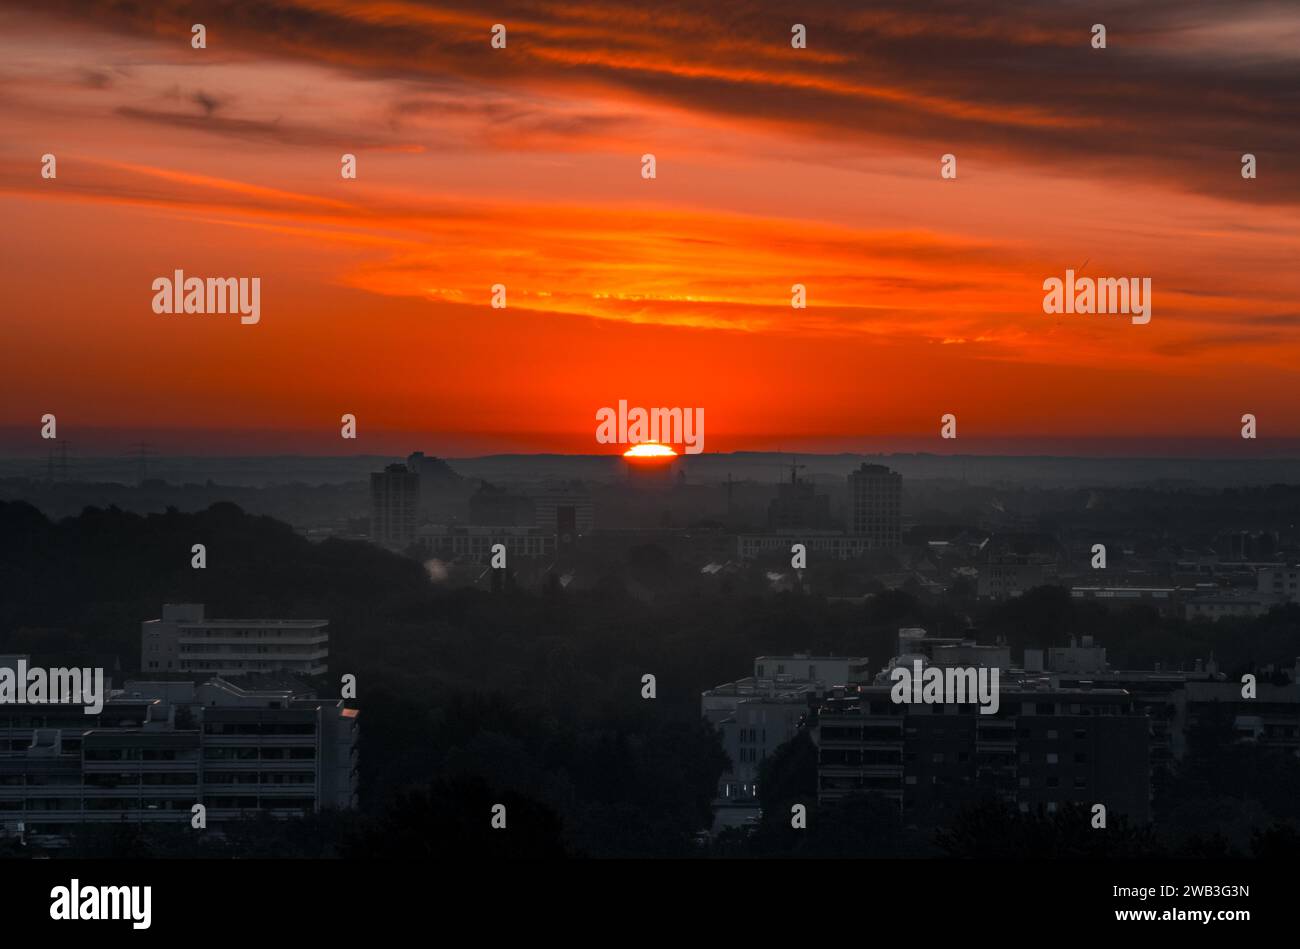 Ein atemberaubender Sonnenuntergang beleuchtet die Skyline einer geschäftigen Stadt. München, Deutschland Stockfoto